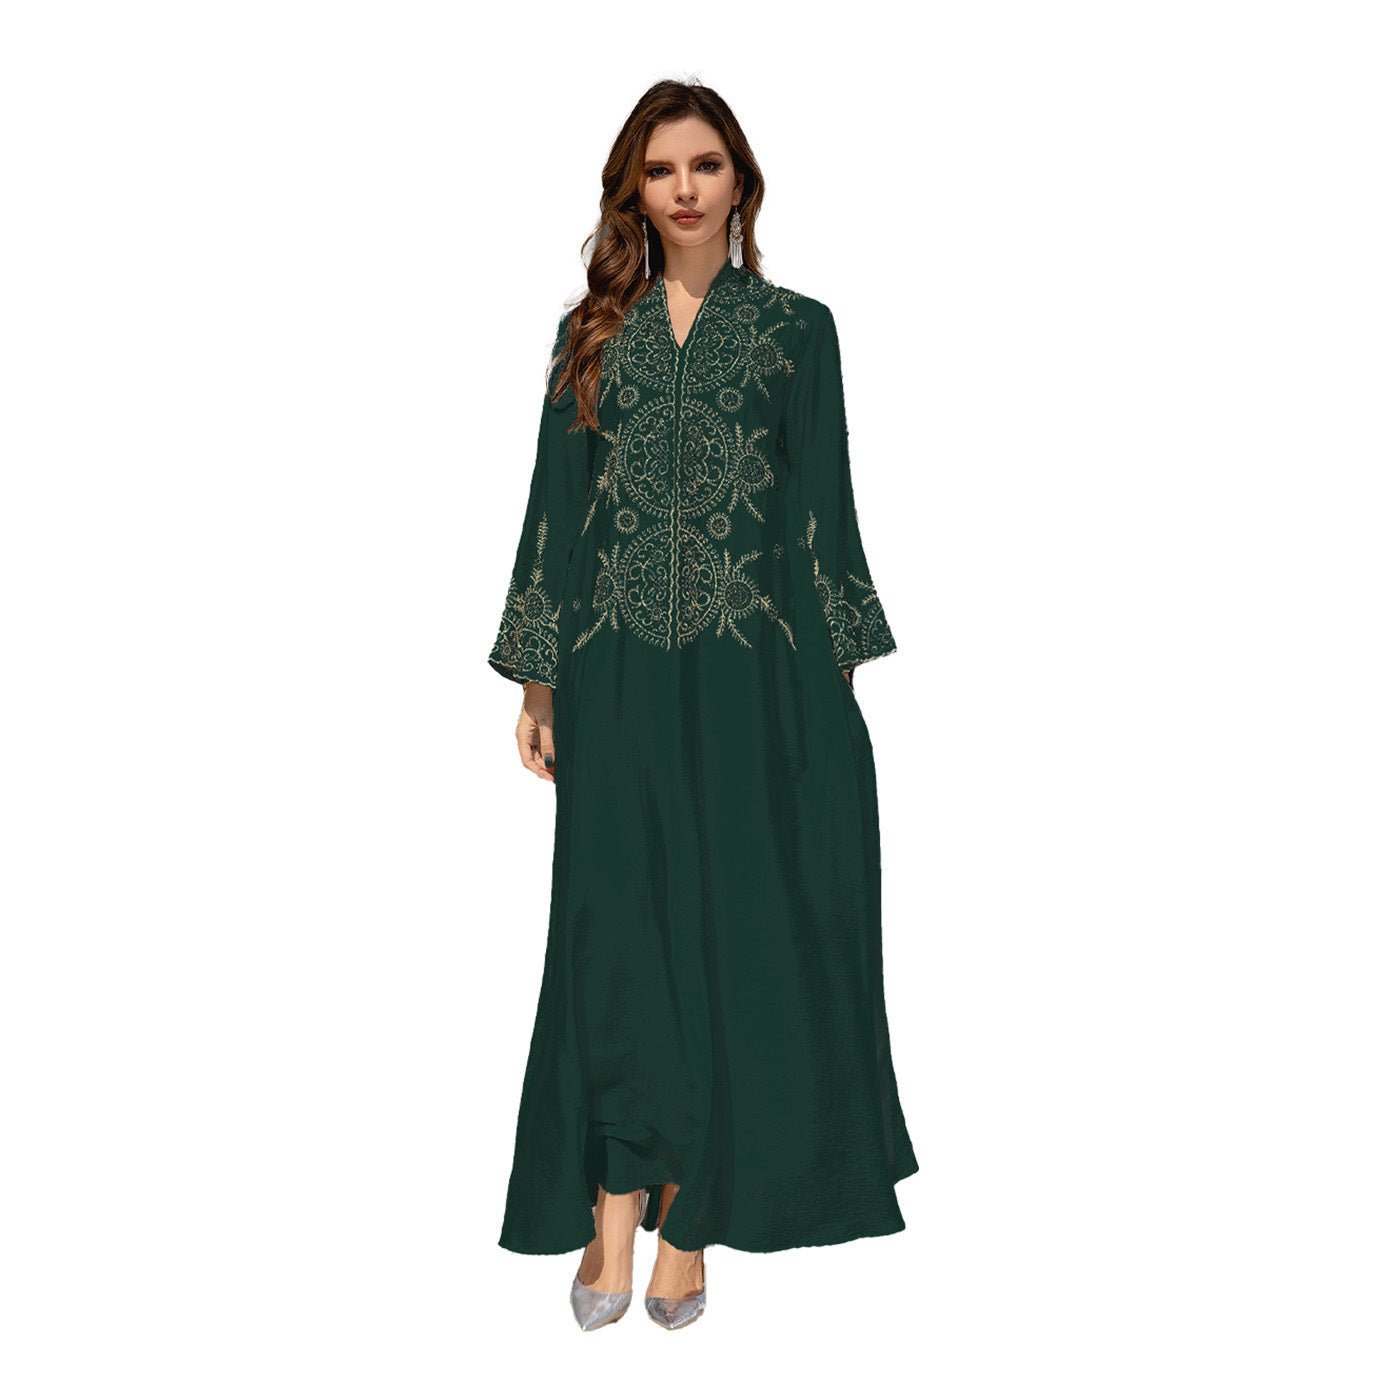 Women's Wear Robe Arabic Dress